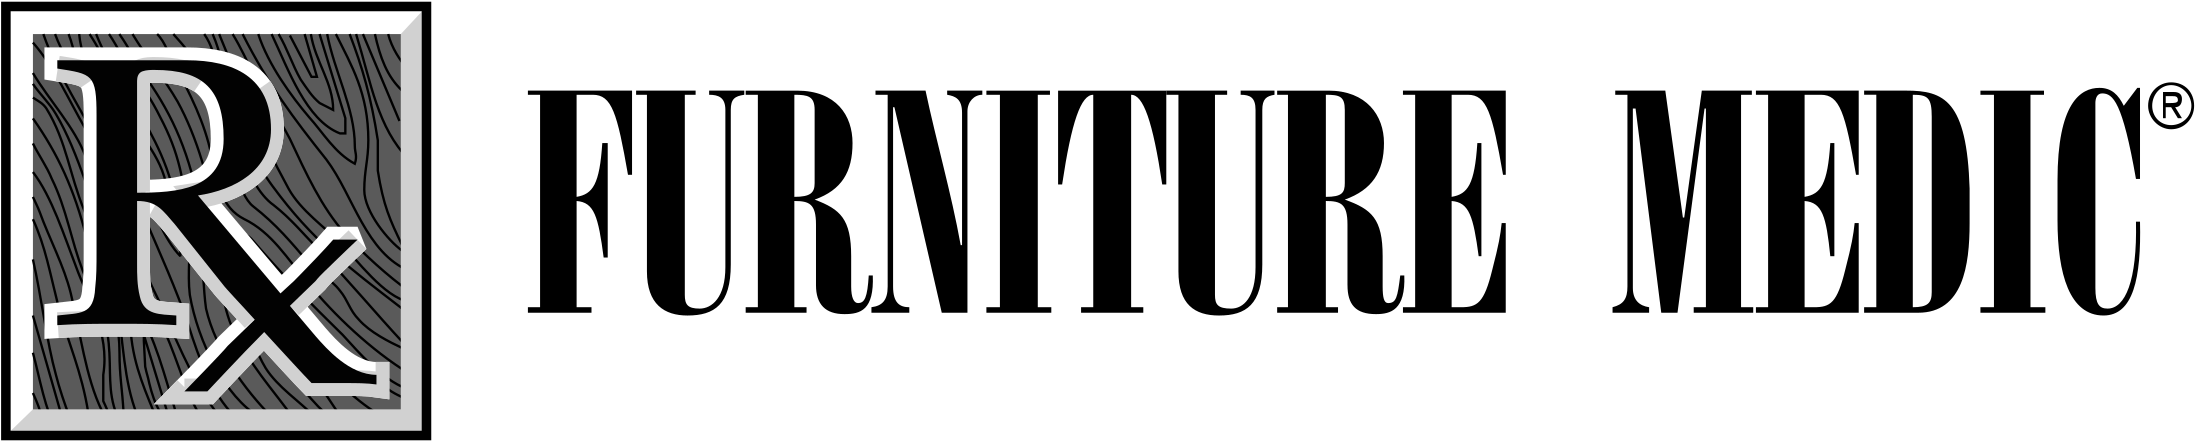 furniture medic logo